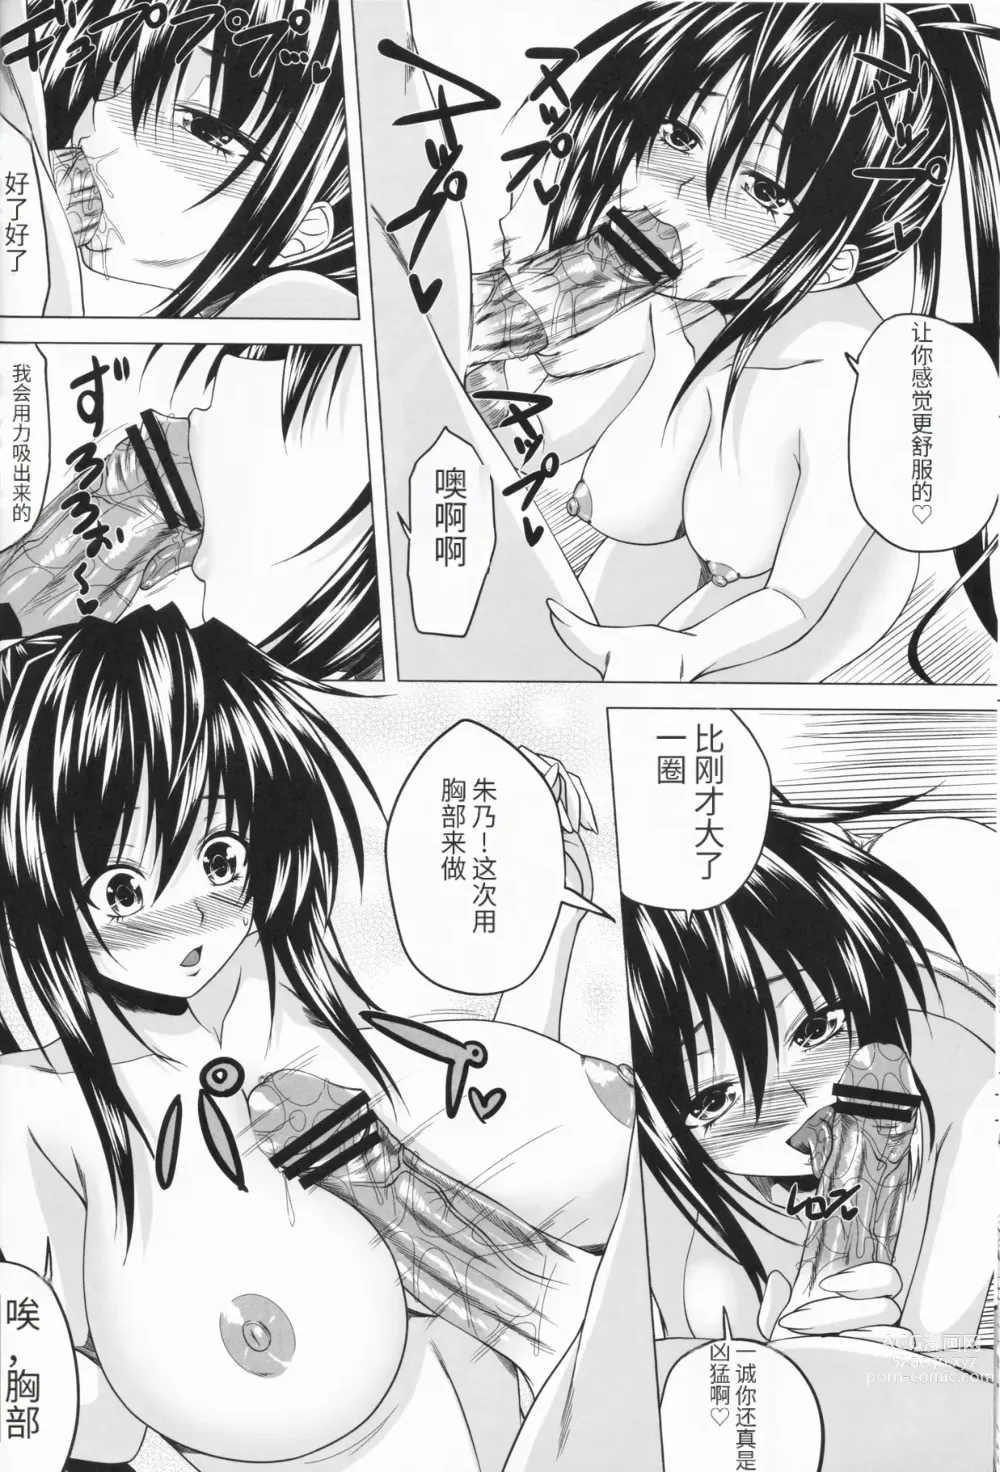 Page 13 of doujinshi Risou no Hyoui Seikatsu